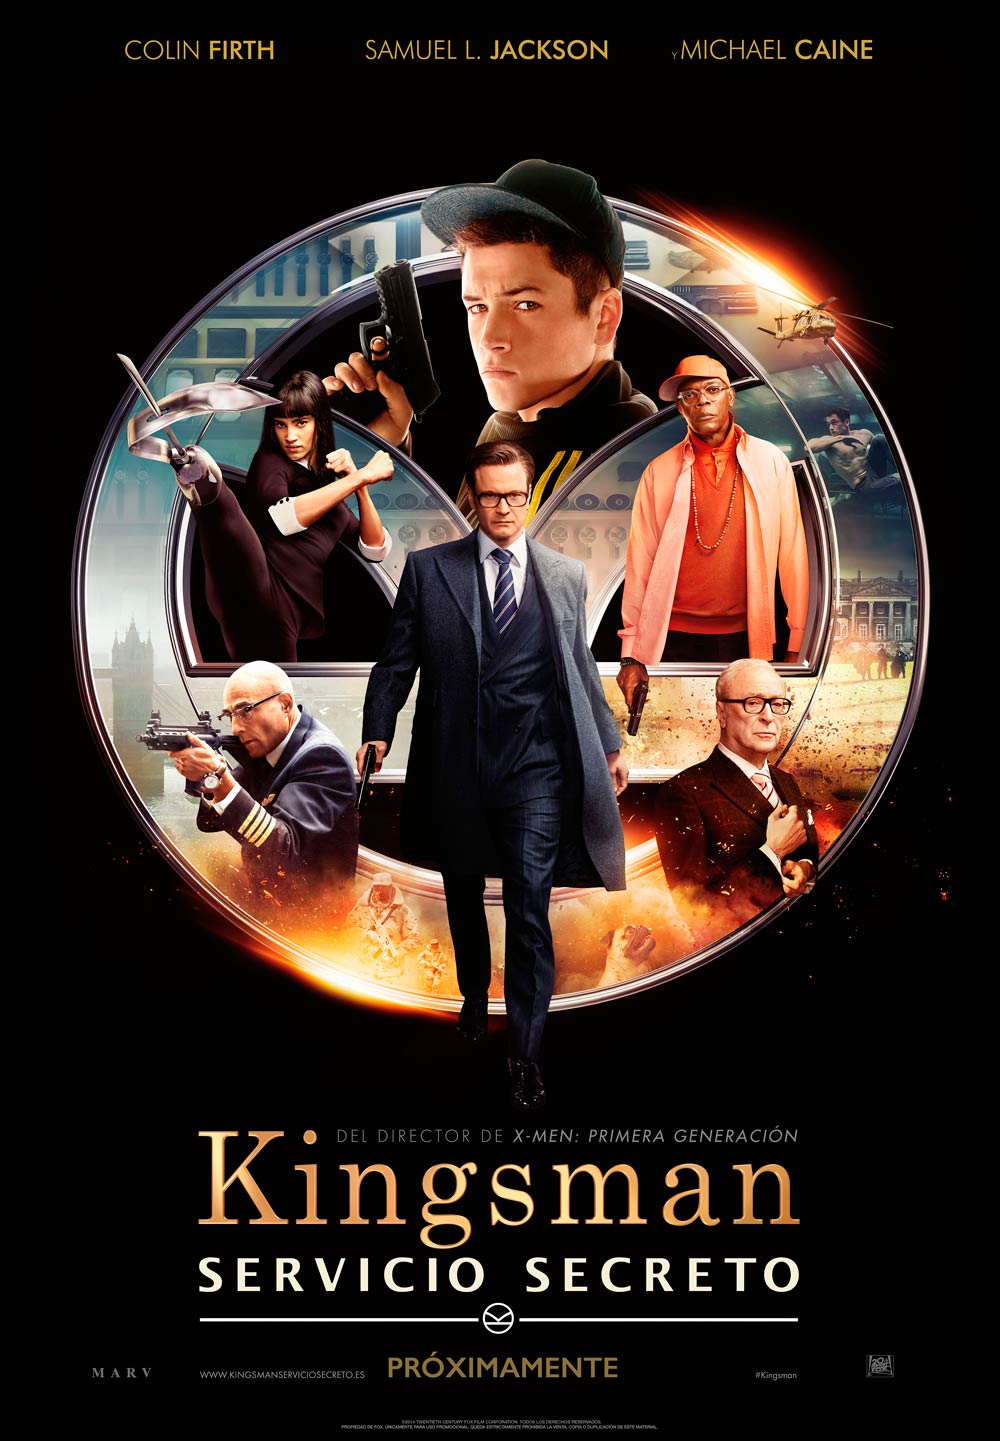 Kingsman Cameo de Mark Hamill explicado